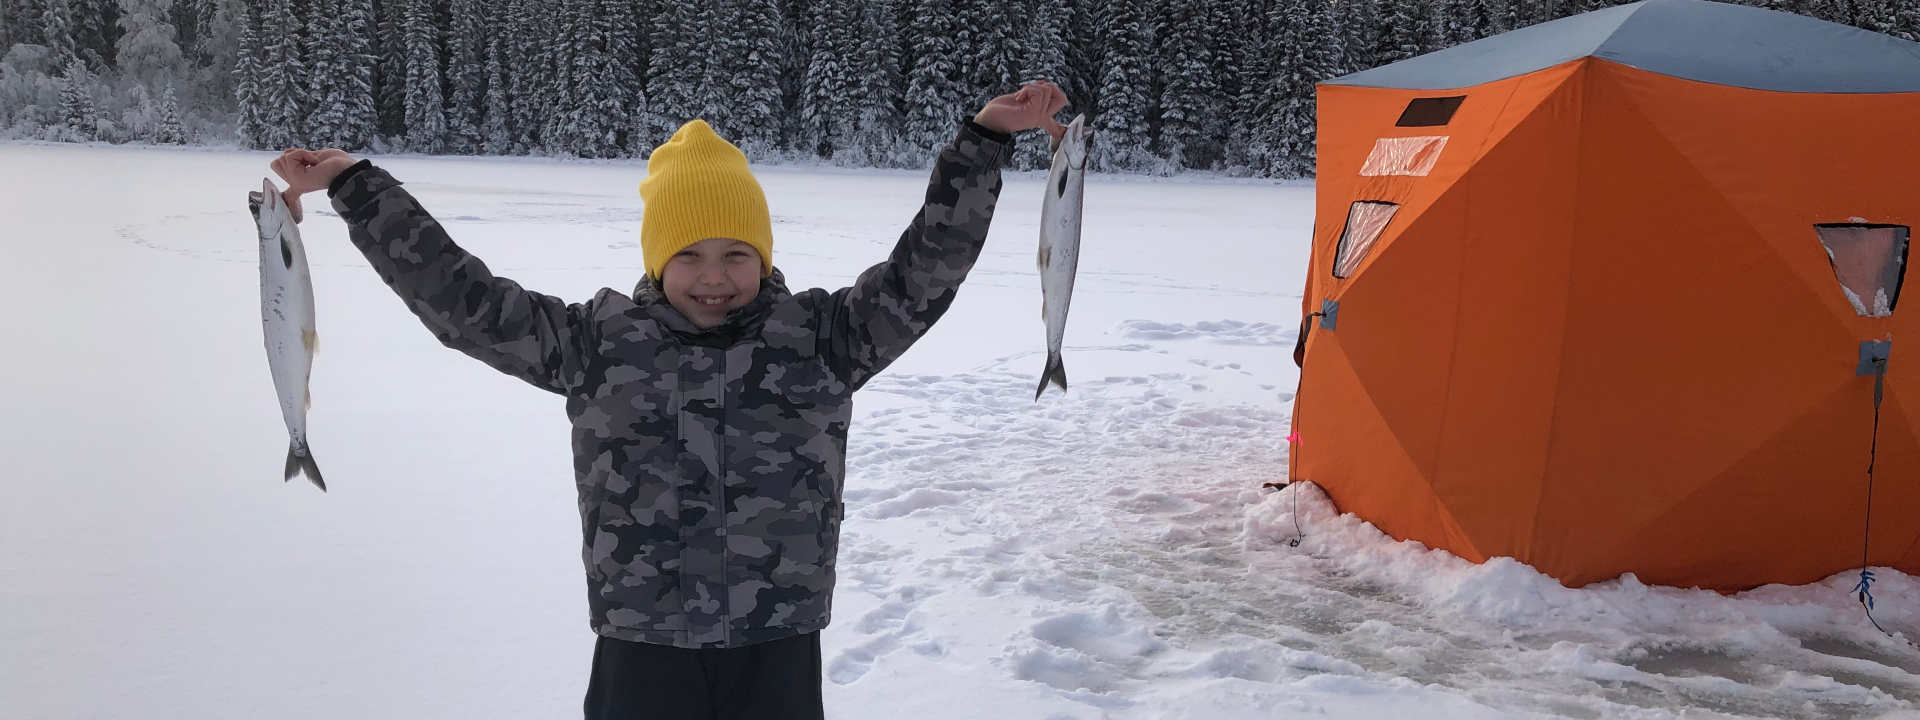 Fishing Equipment - Ice Fishing Equipment - Page 1 - Nechako Outdoors